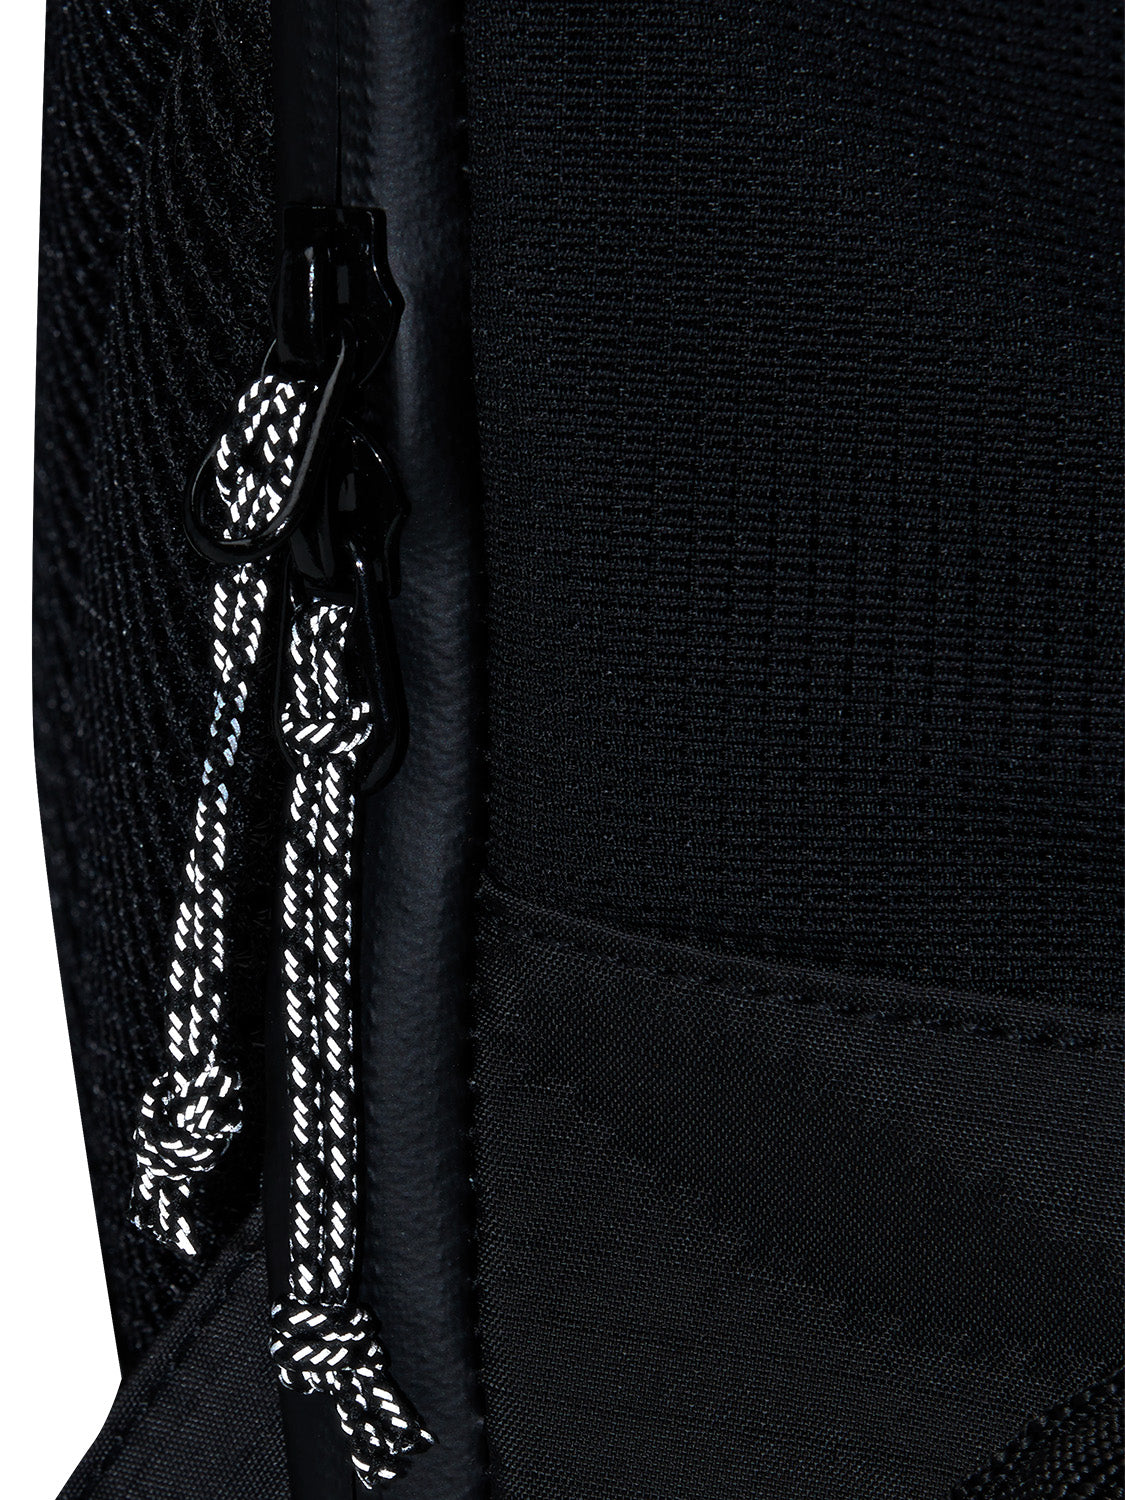 AEVOR-backpack-Travel-Pack-Proof-Black-detail